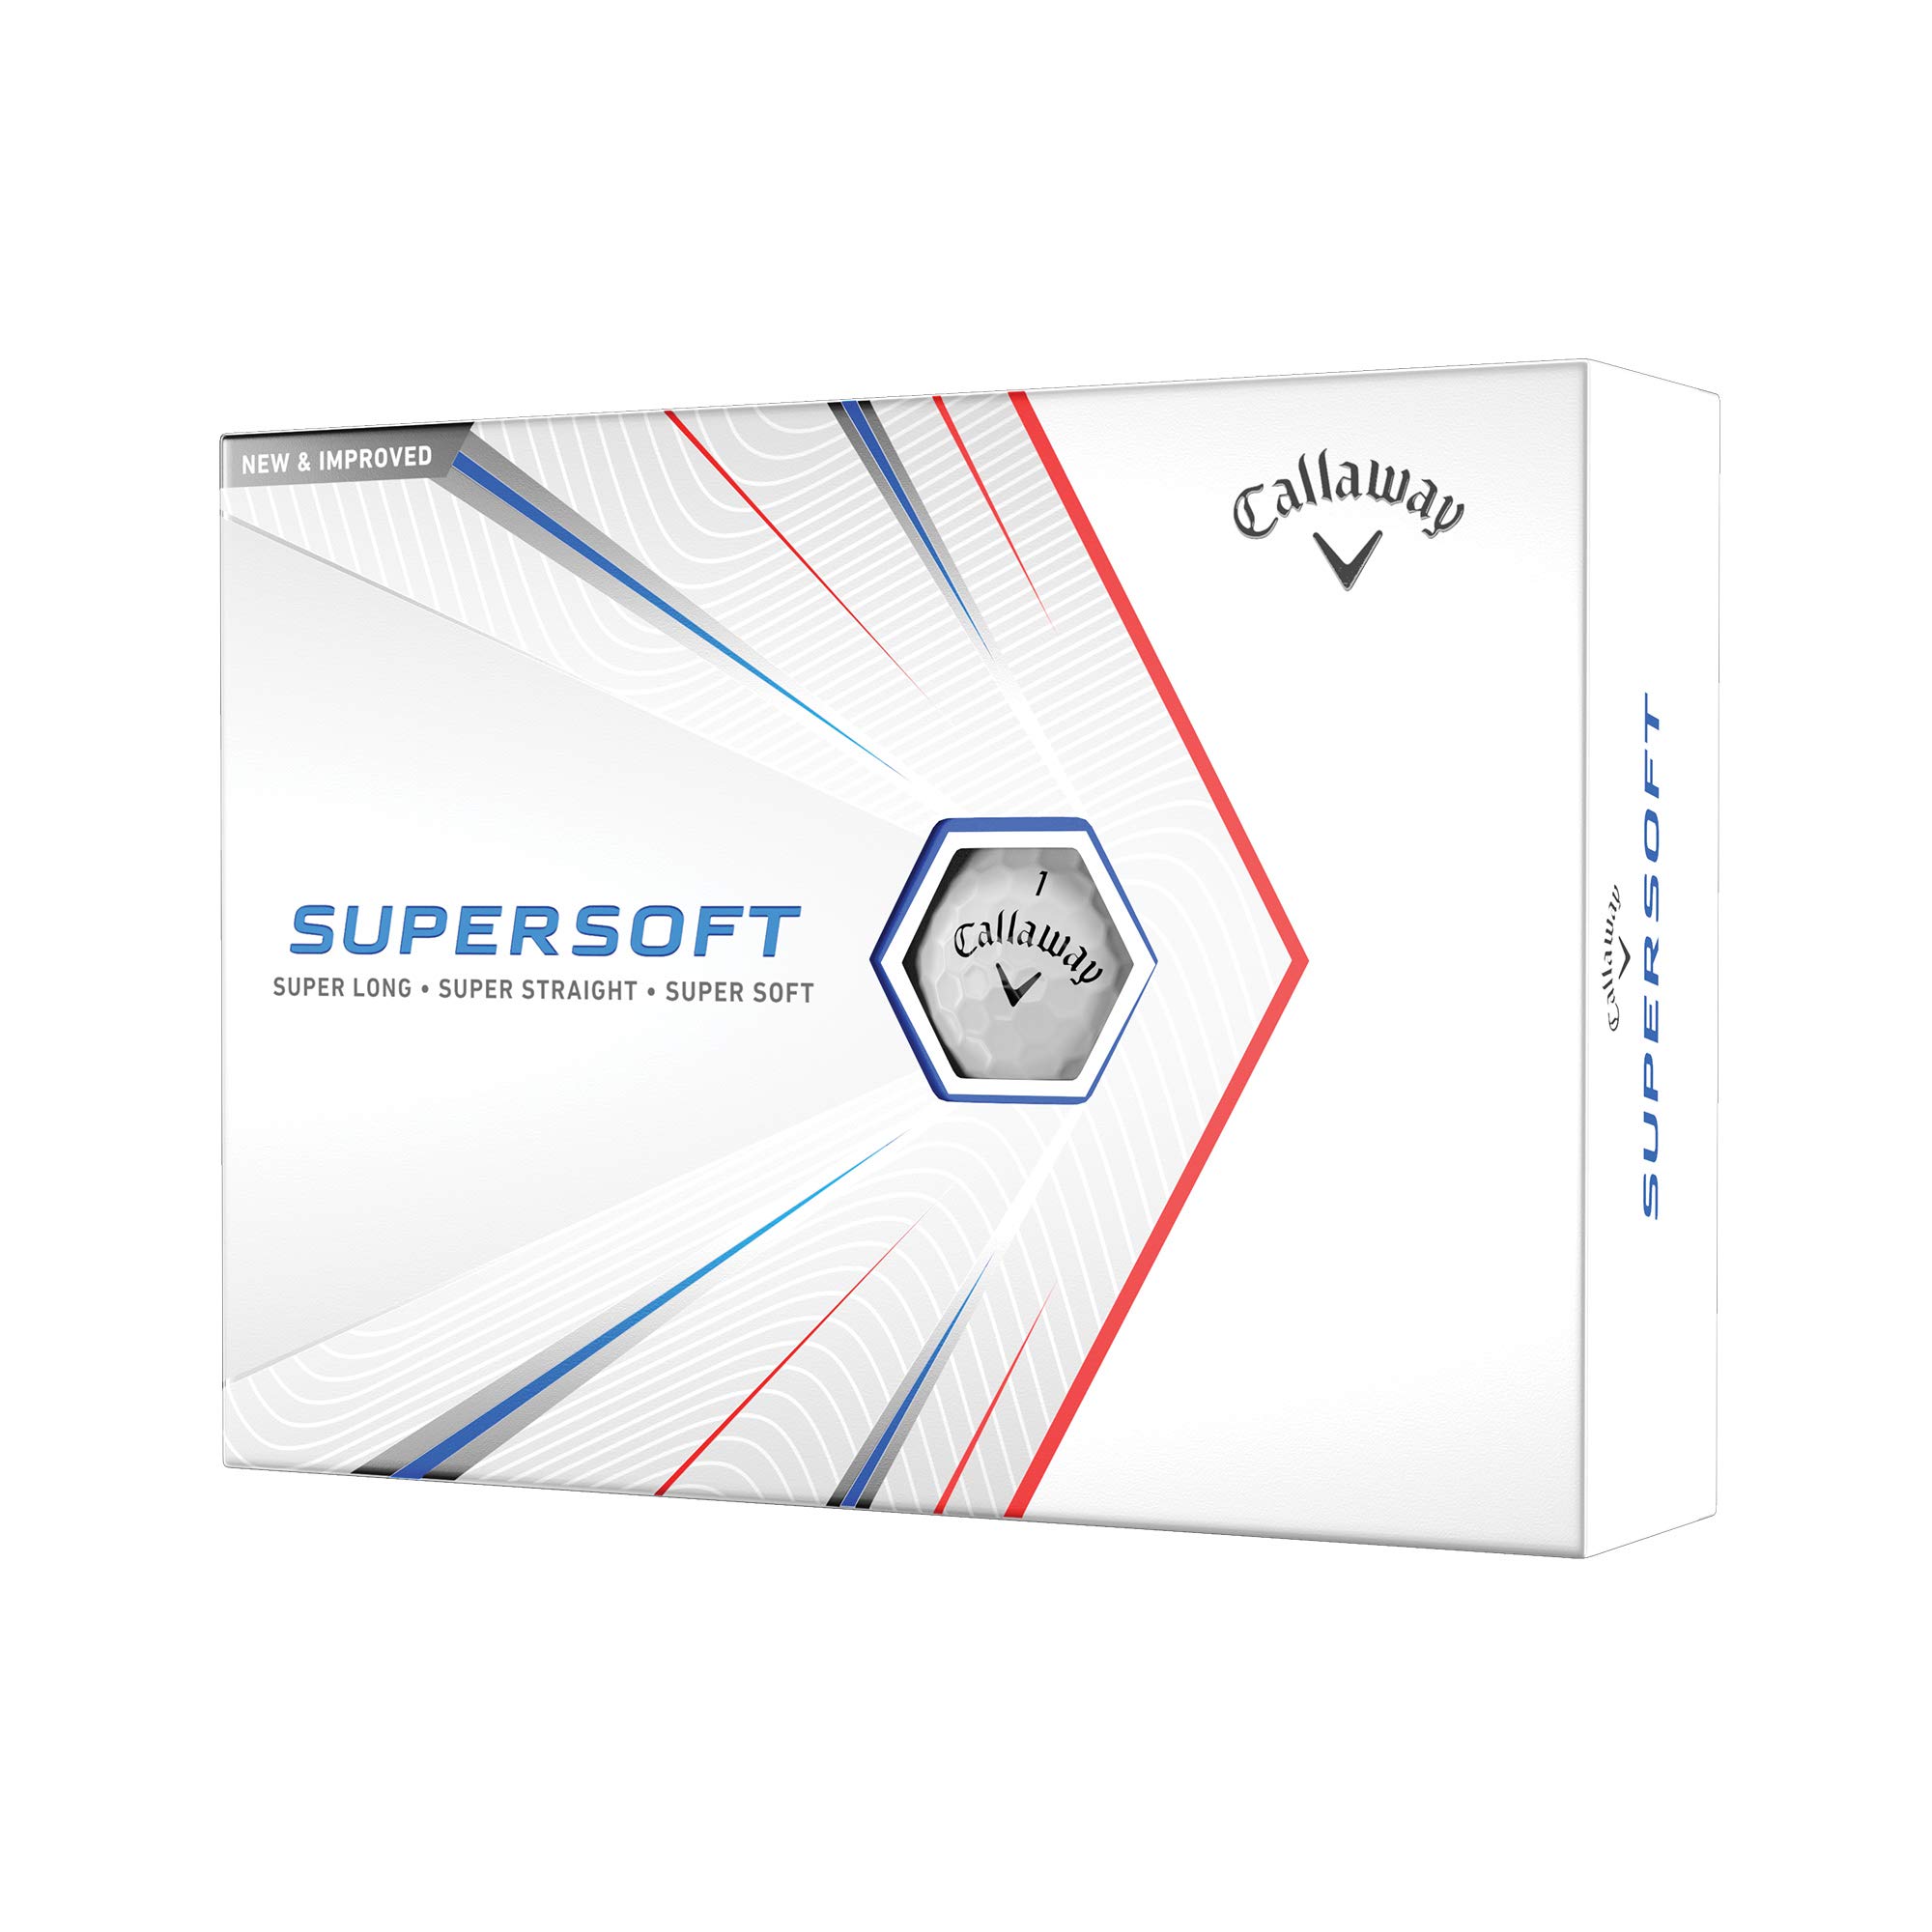 Callaway Golf 2021 Supersoft